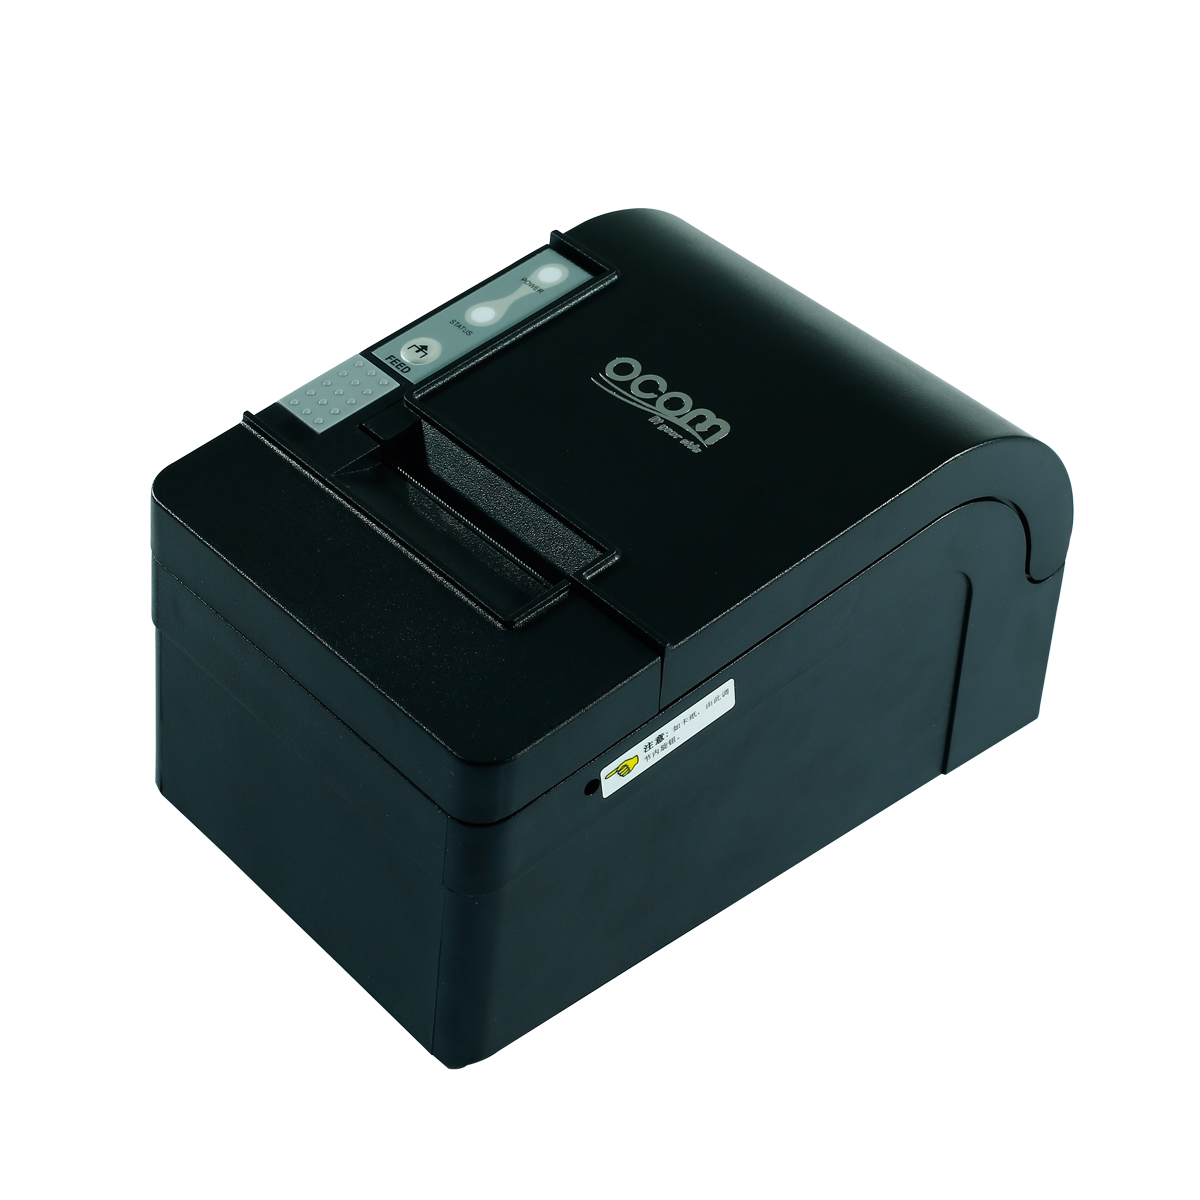 58mm热敏收据打印机用于POS系统的自动切纸器（OCPP-58C-U）